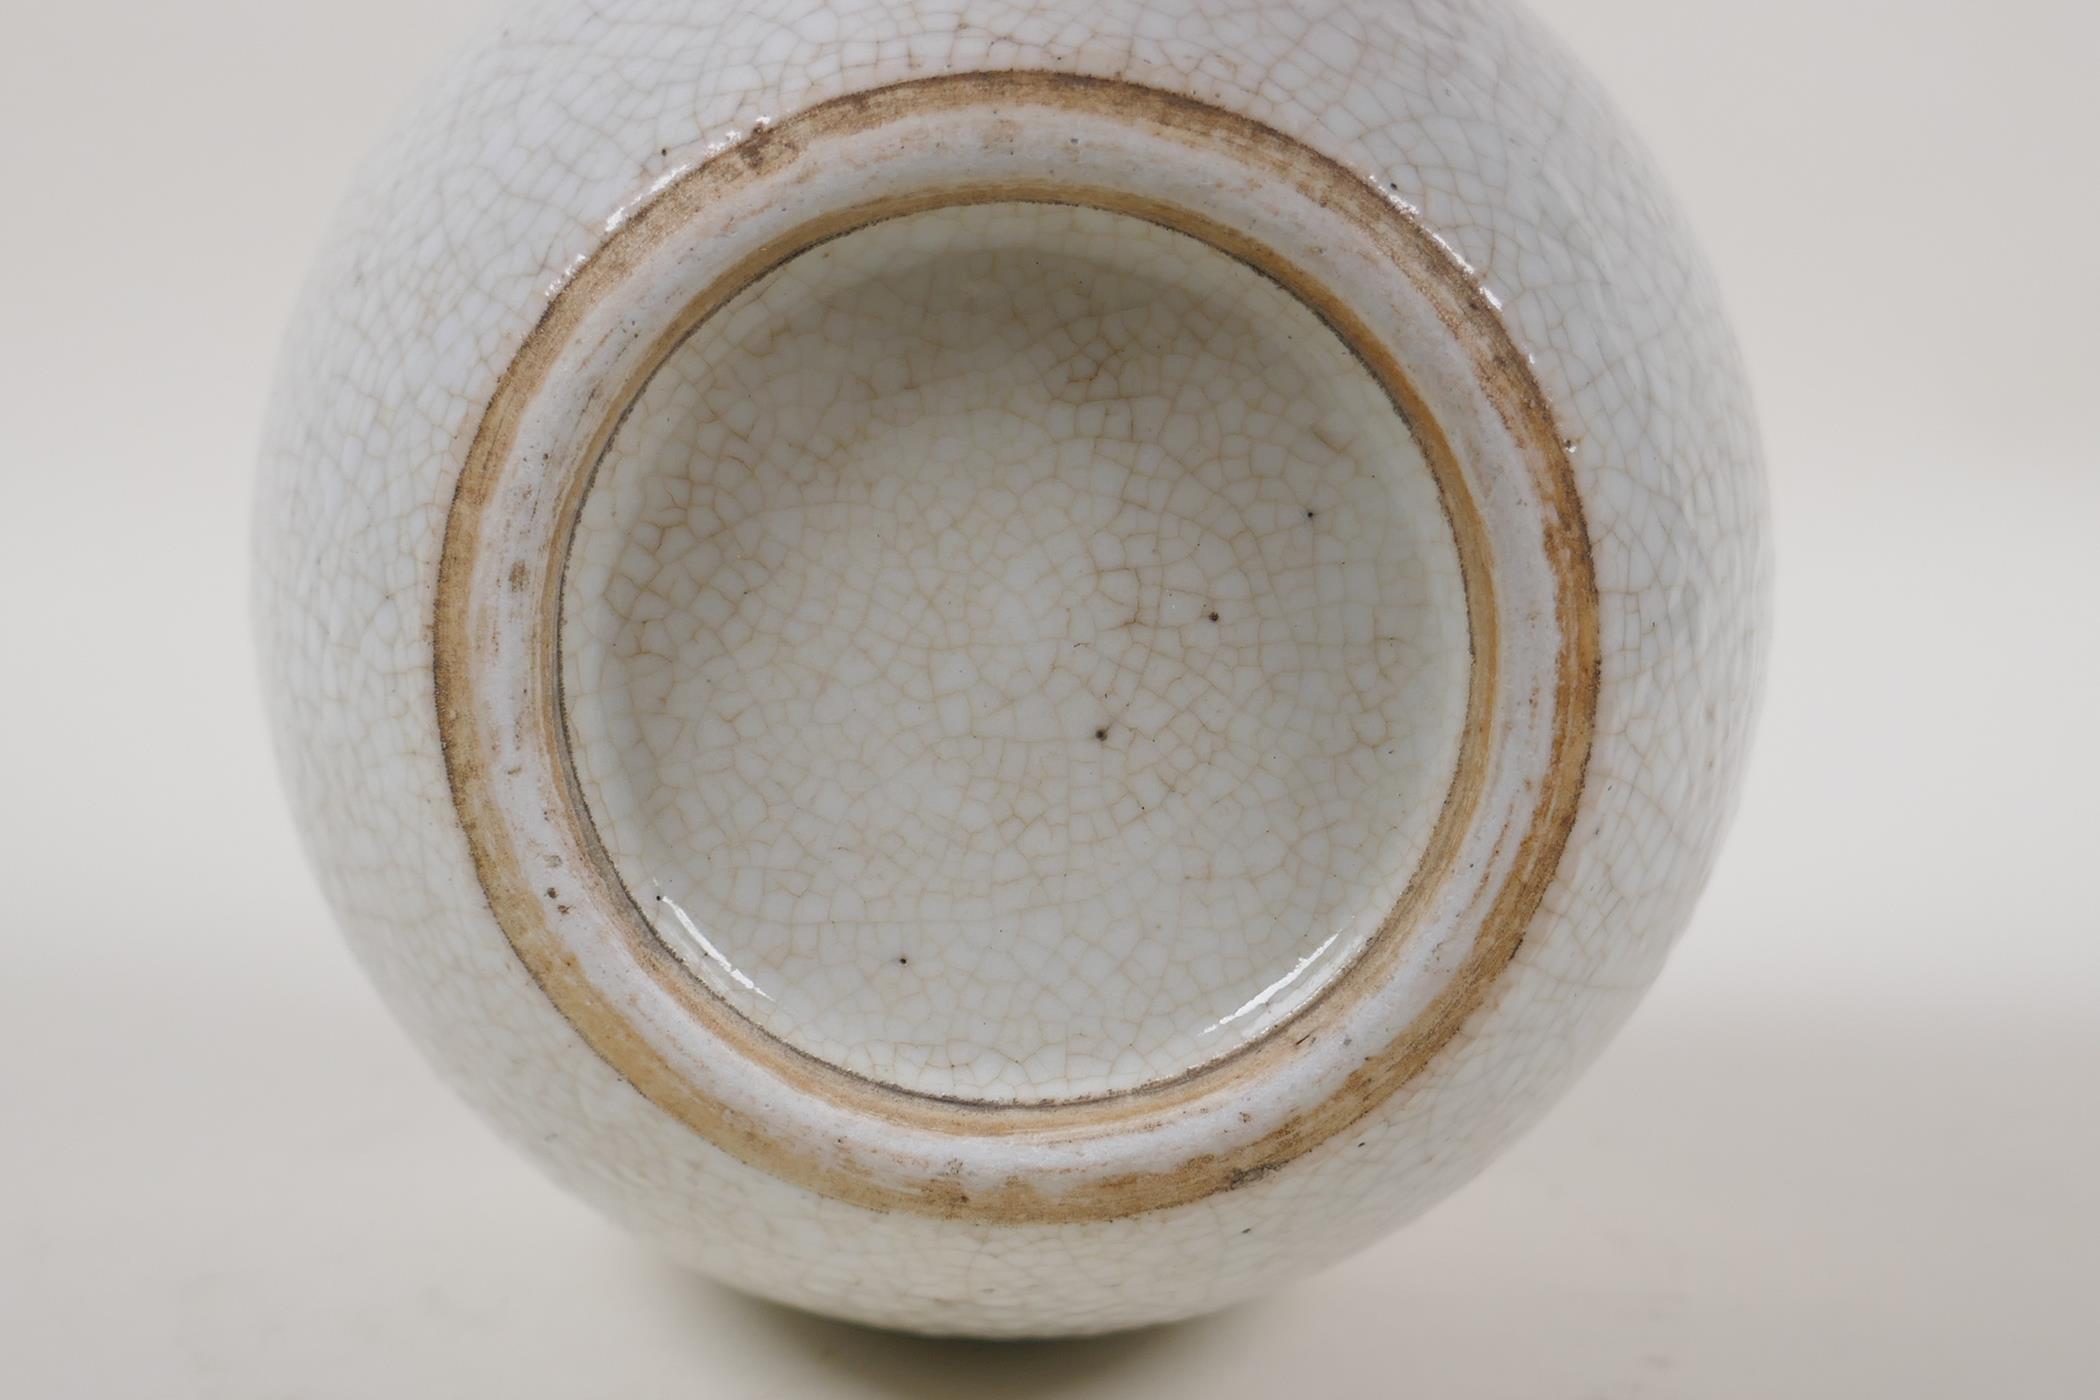 A Chinese cream crackleglazed porcelain jar, 5" high - Image 4 of 4